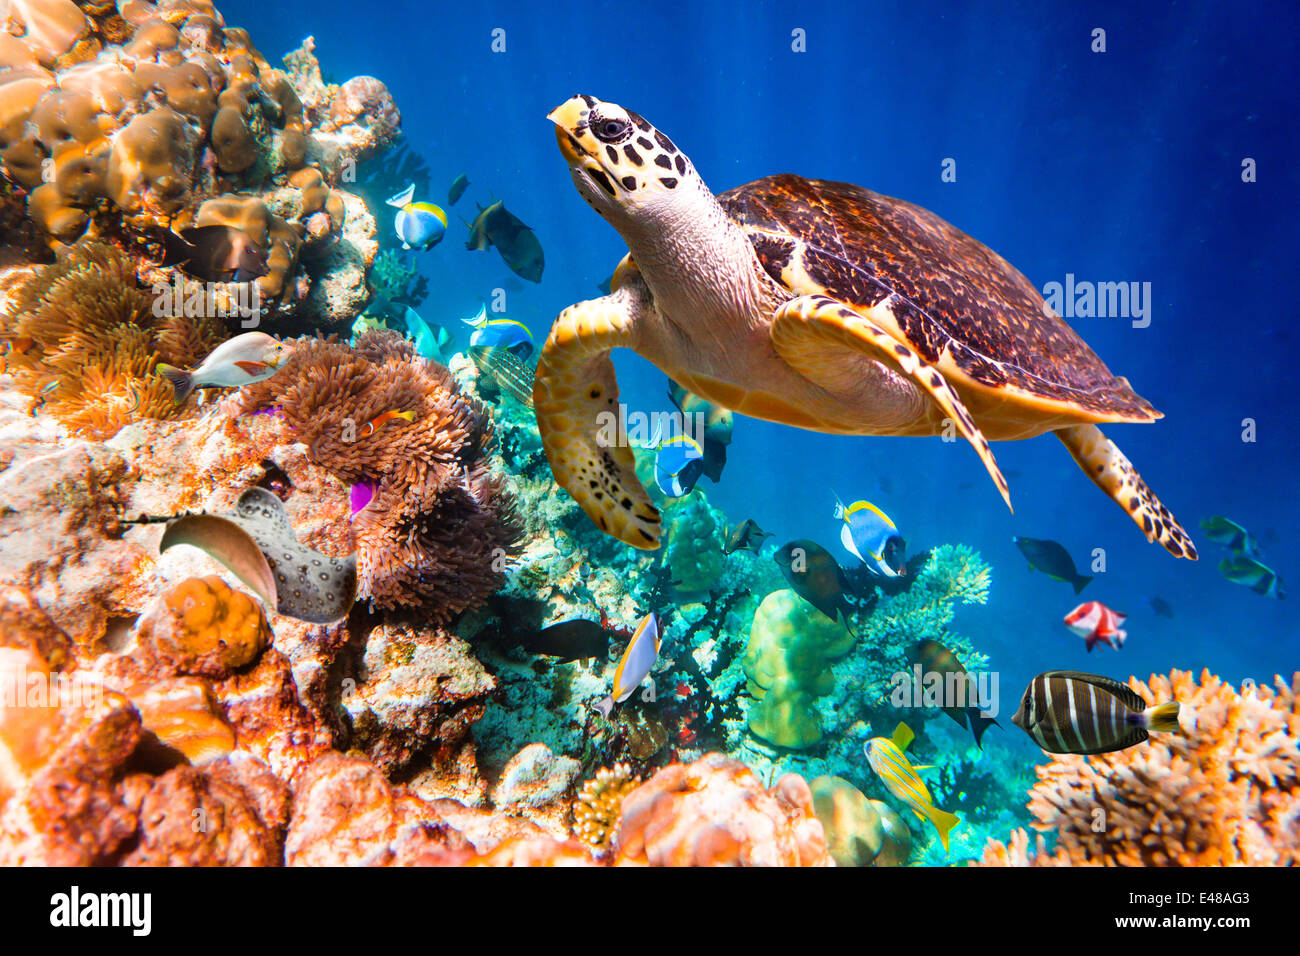 Tartaruga embricata - Eretmochelys imbricata galleggianti sotto l'acqua. Maldive Oceano Indiano Coral reef. Foto Stock